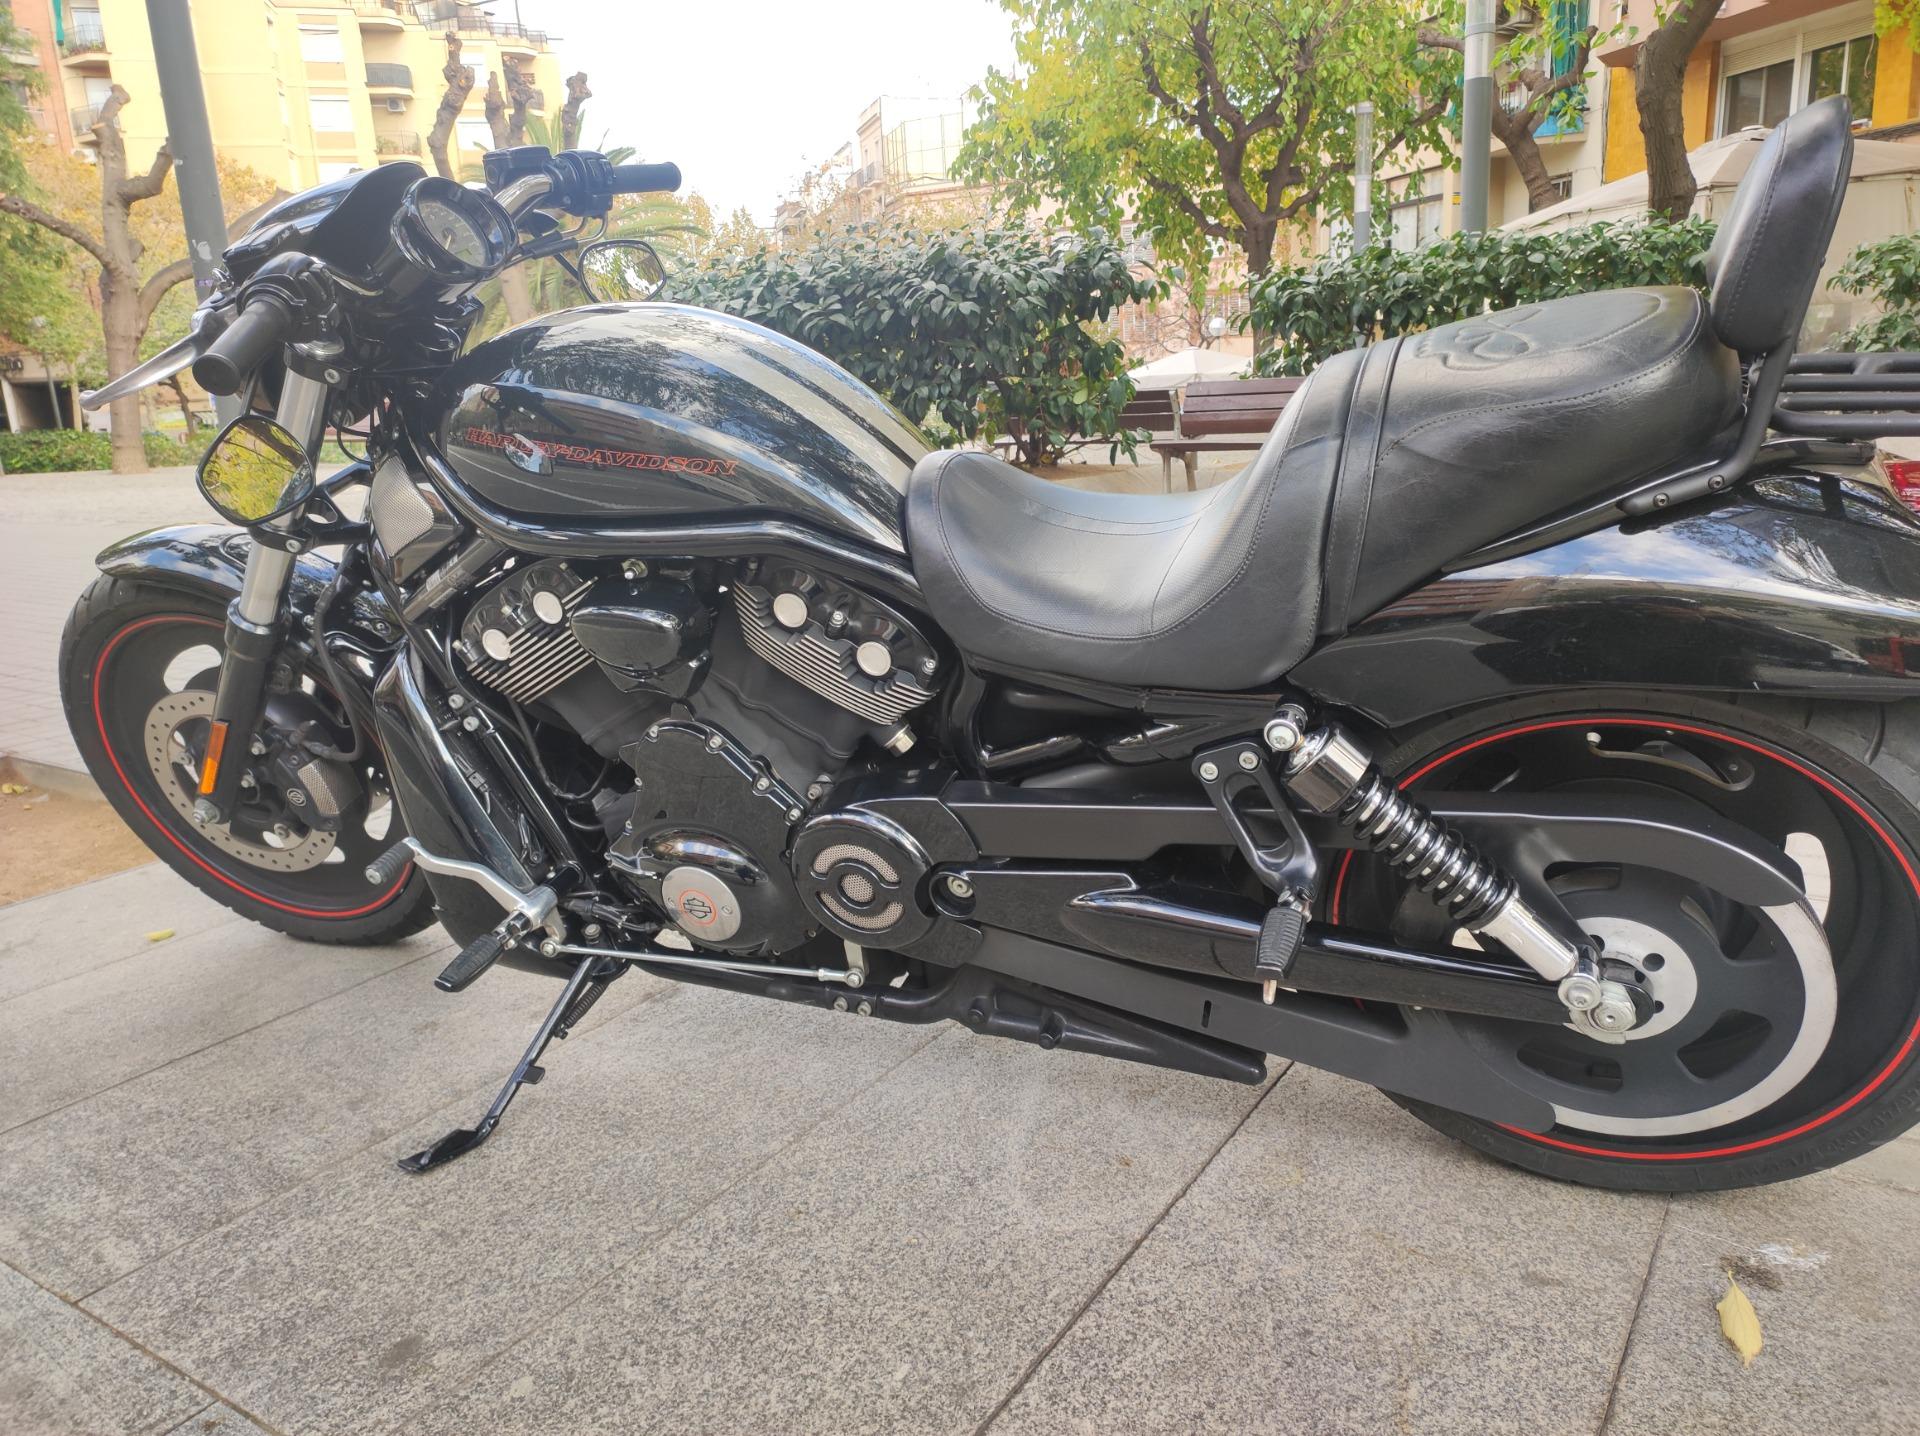 Foto 3 de Harley Davidson Vrod special nigth 